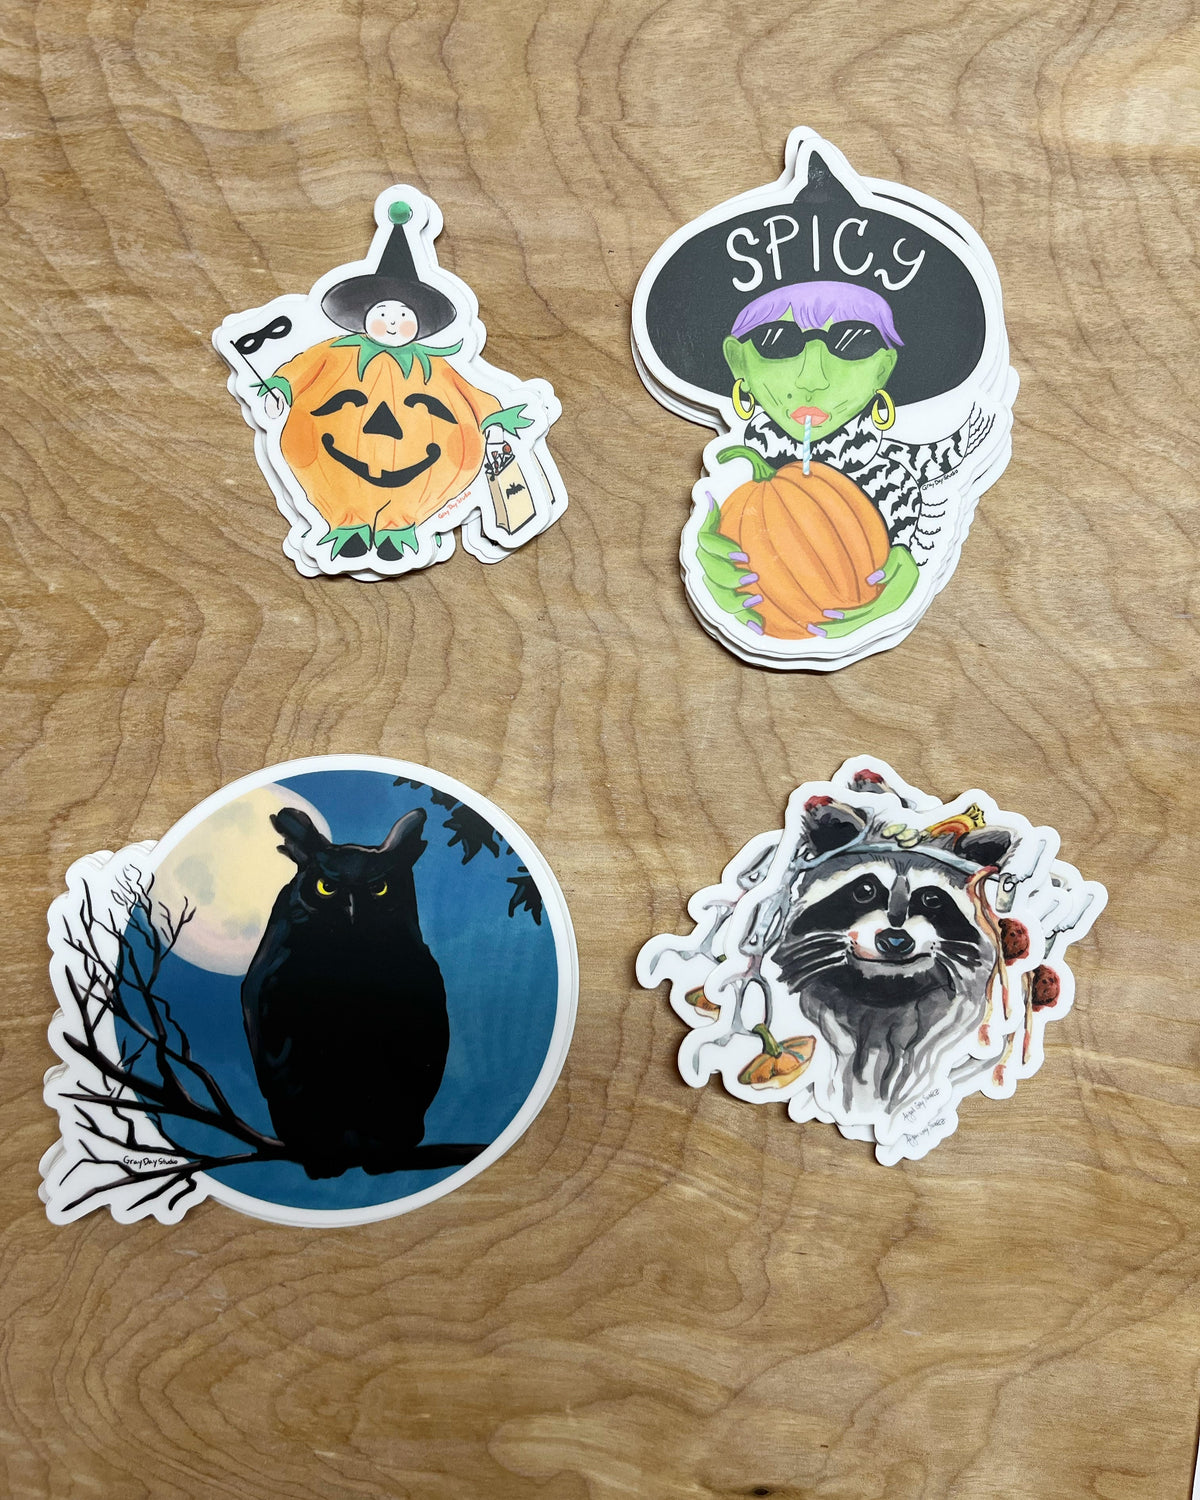 Pumpkin- Spicy Witch, Halloween Sticker- Stickers &amp; Magnets